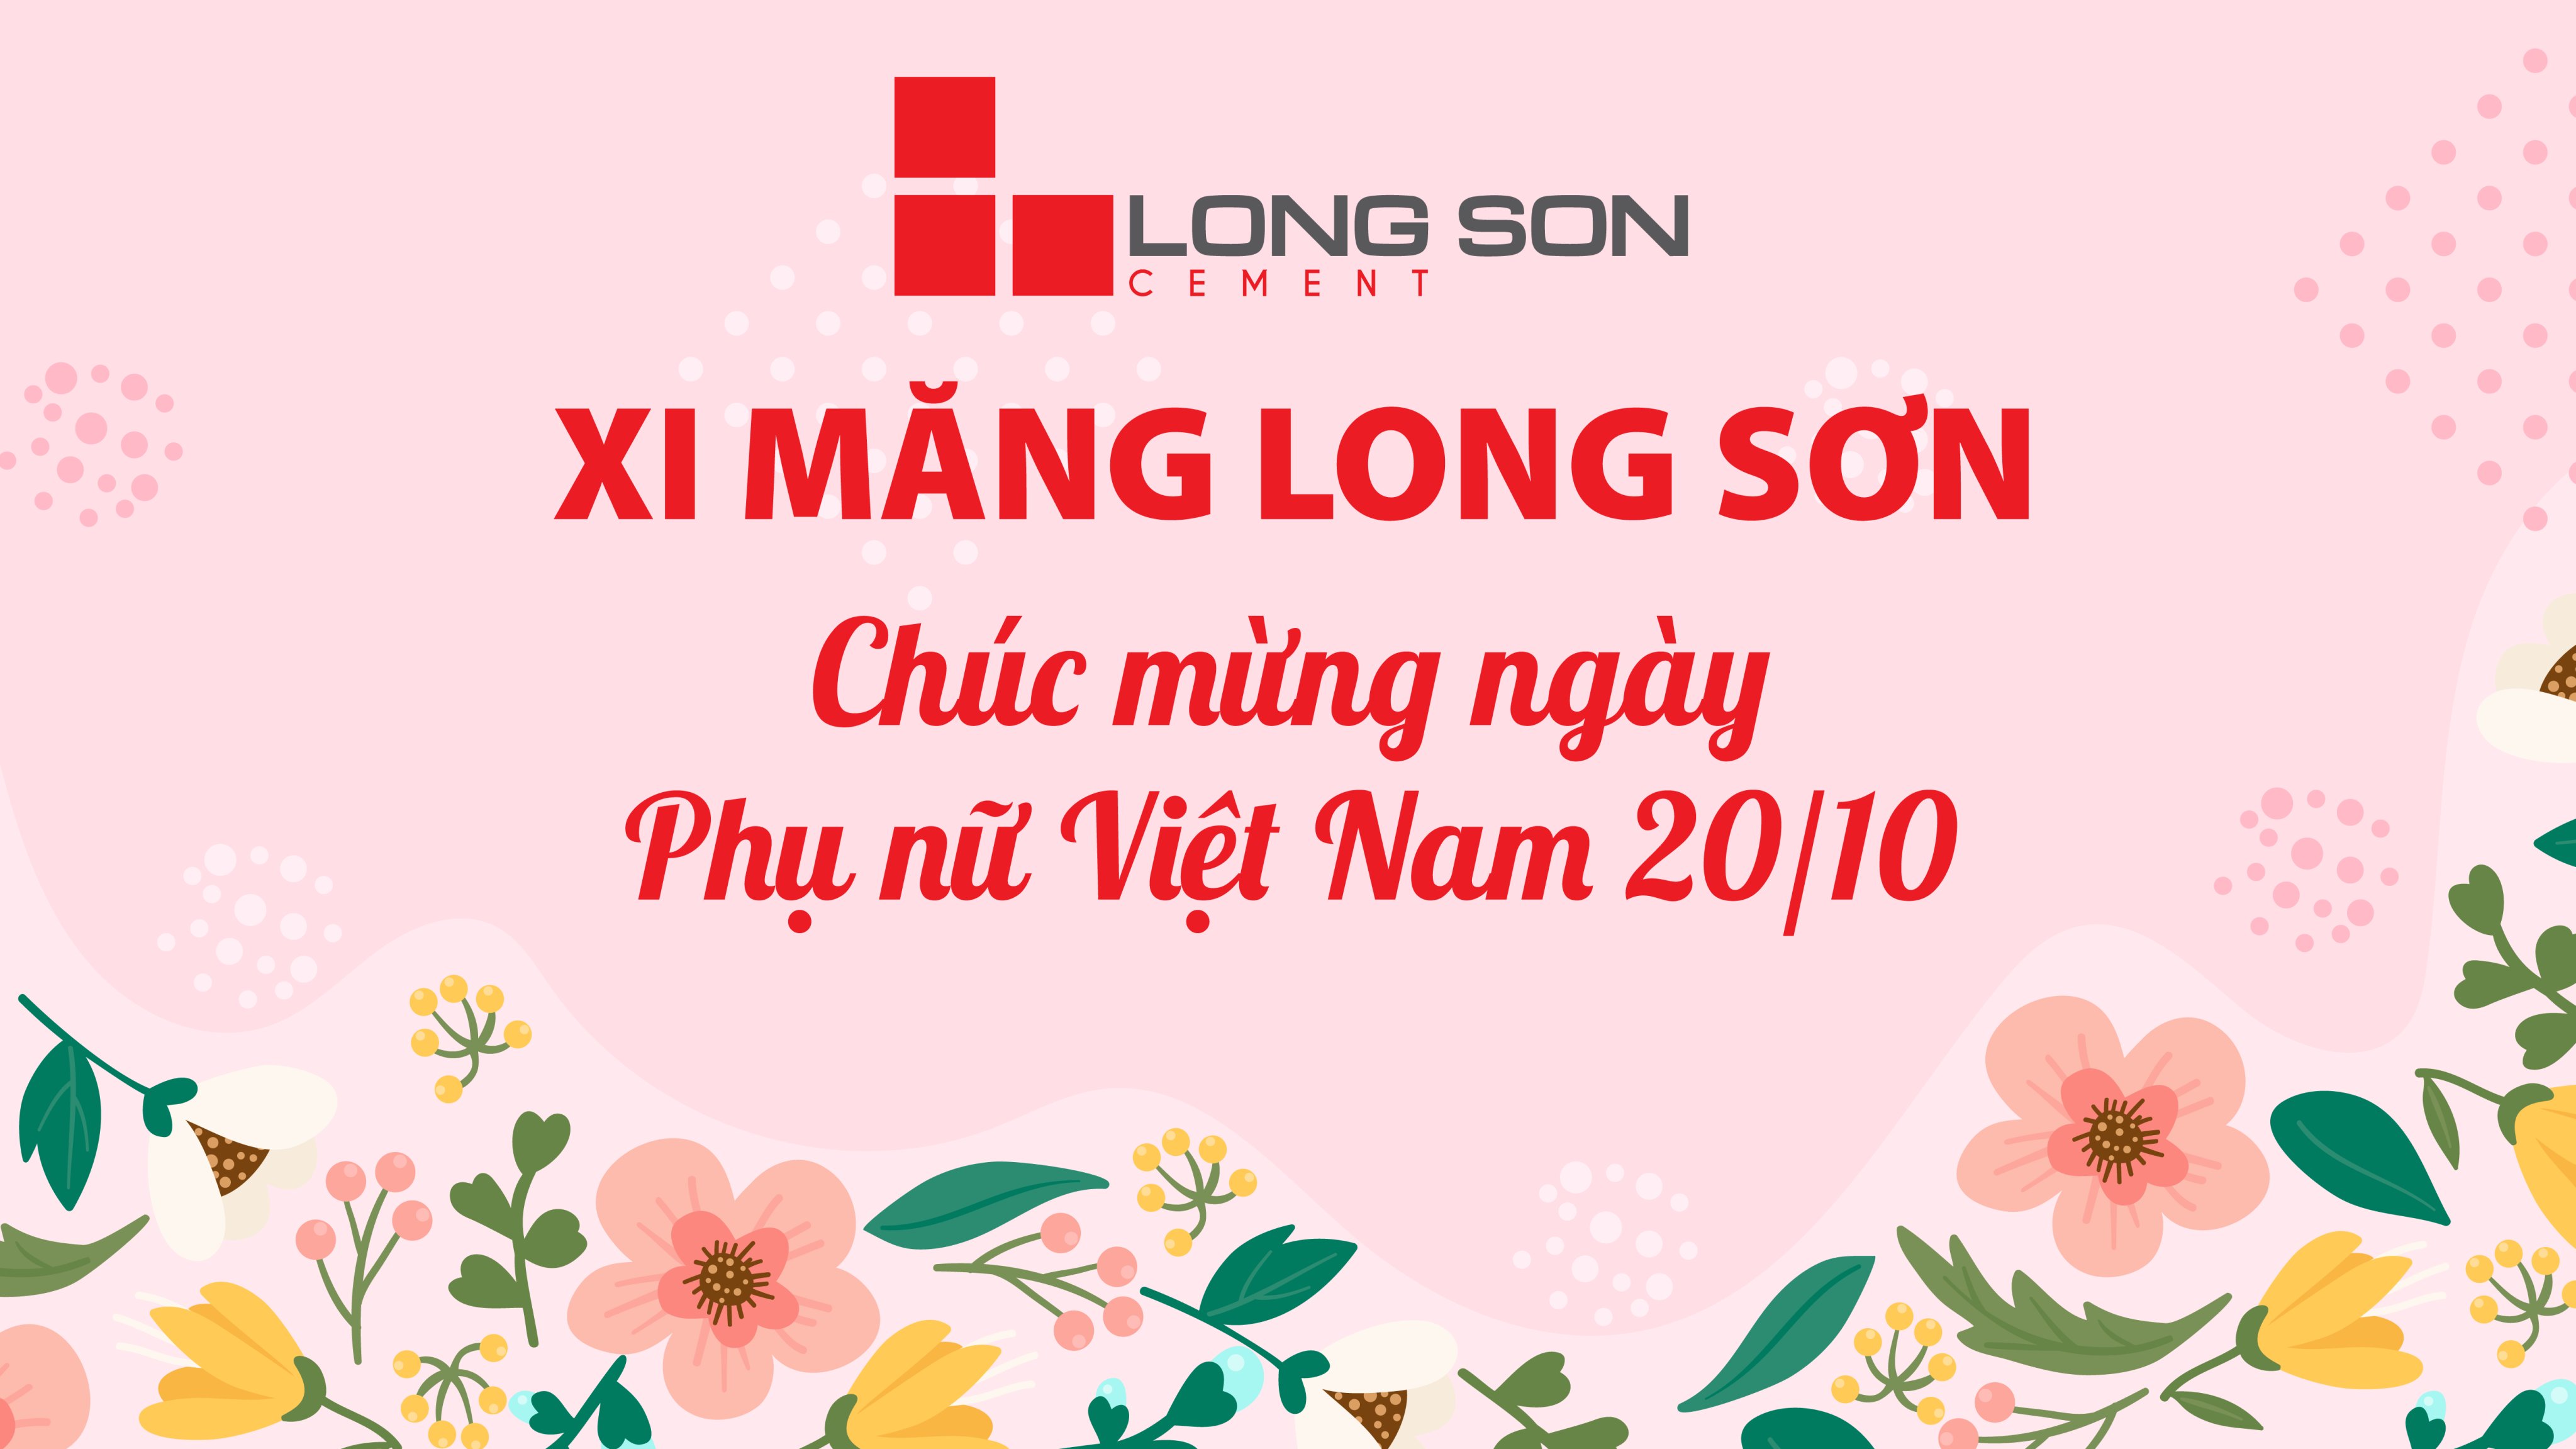 Công ty Xi măng Long Sơn – Chúc mừng ngày phụ nữ Việt Nam 20/10.